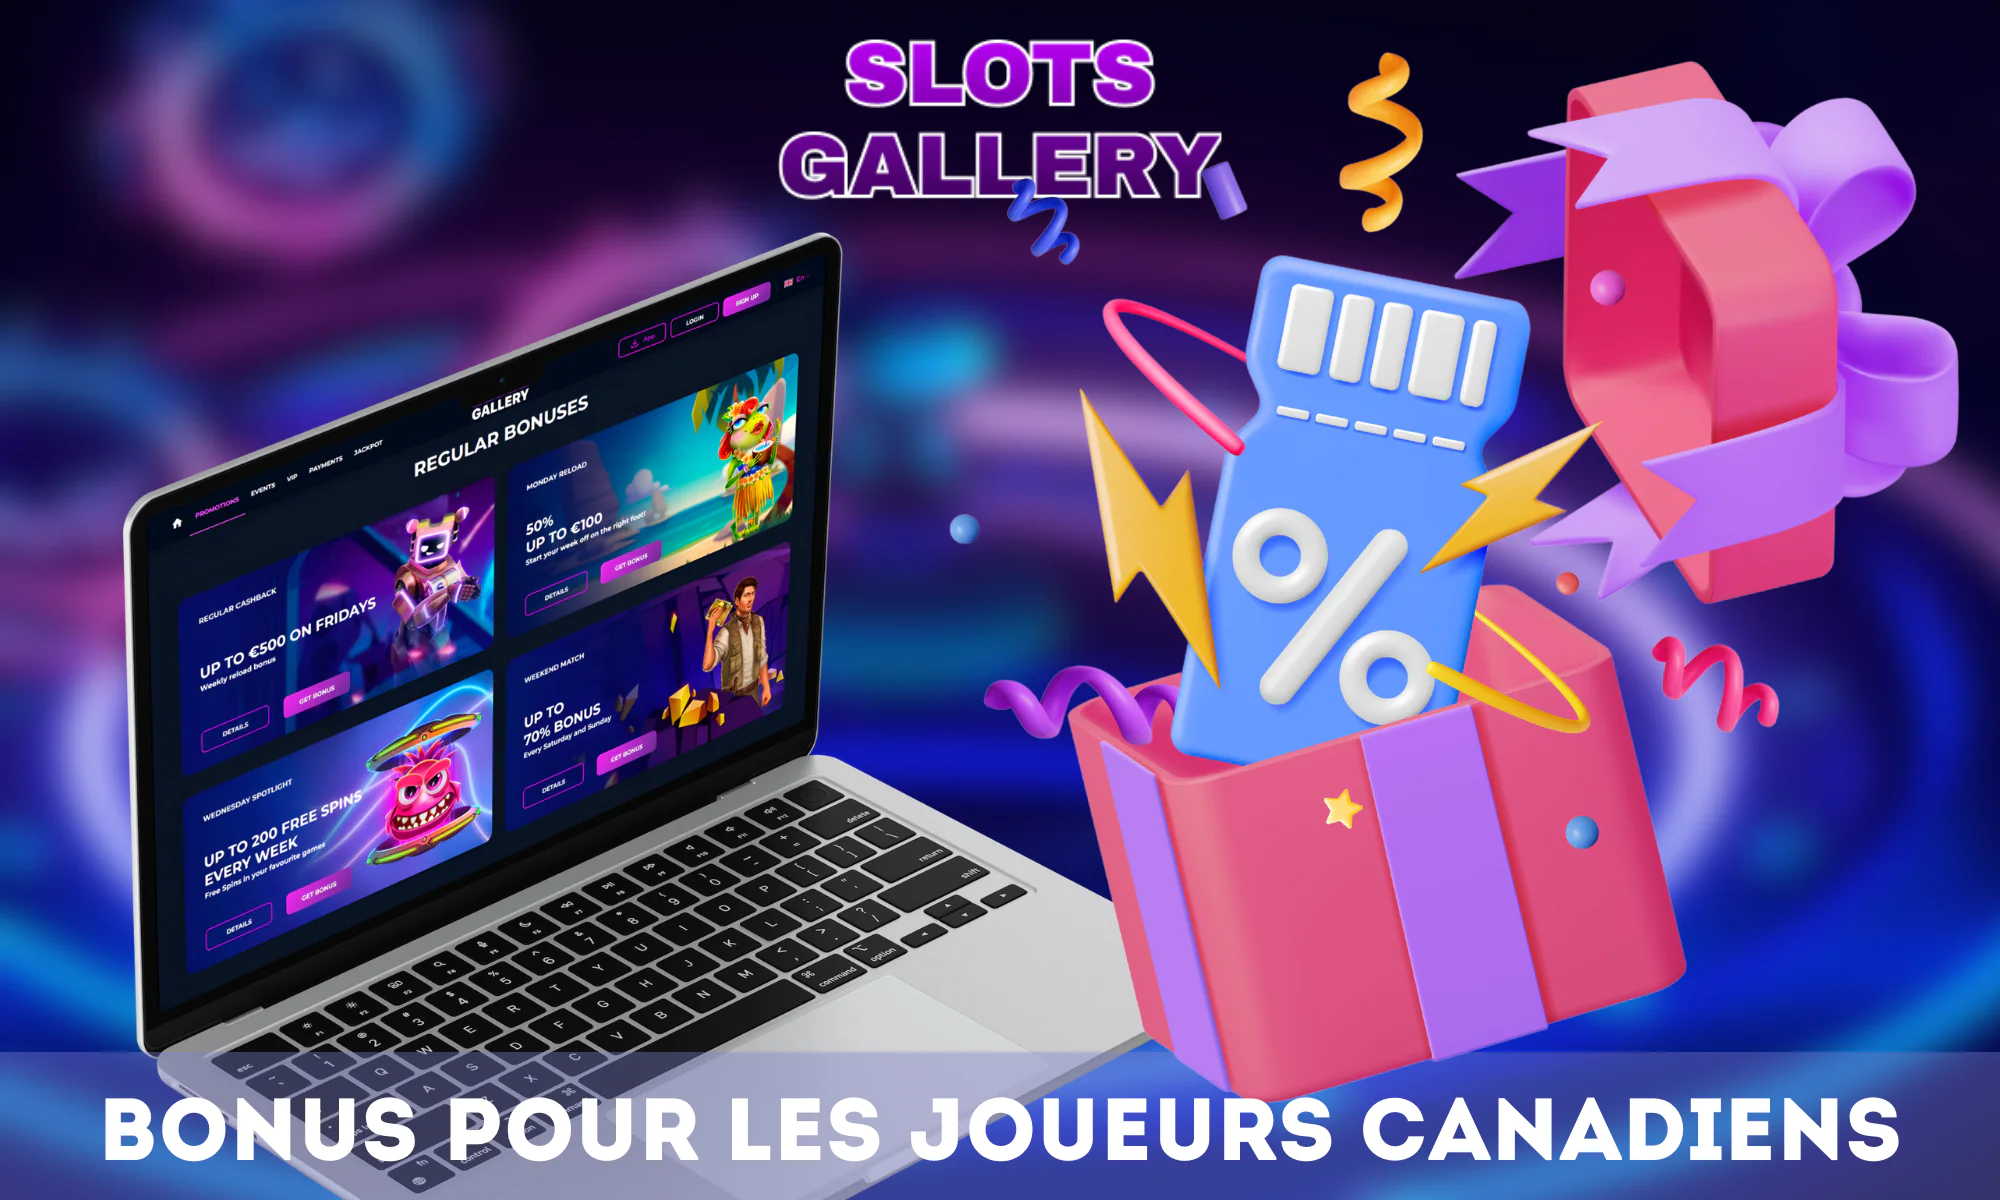 Slots Gallery Casino est connu pour ses bonus et promotions attrayants.